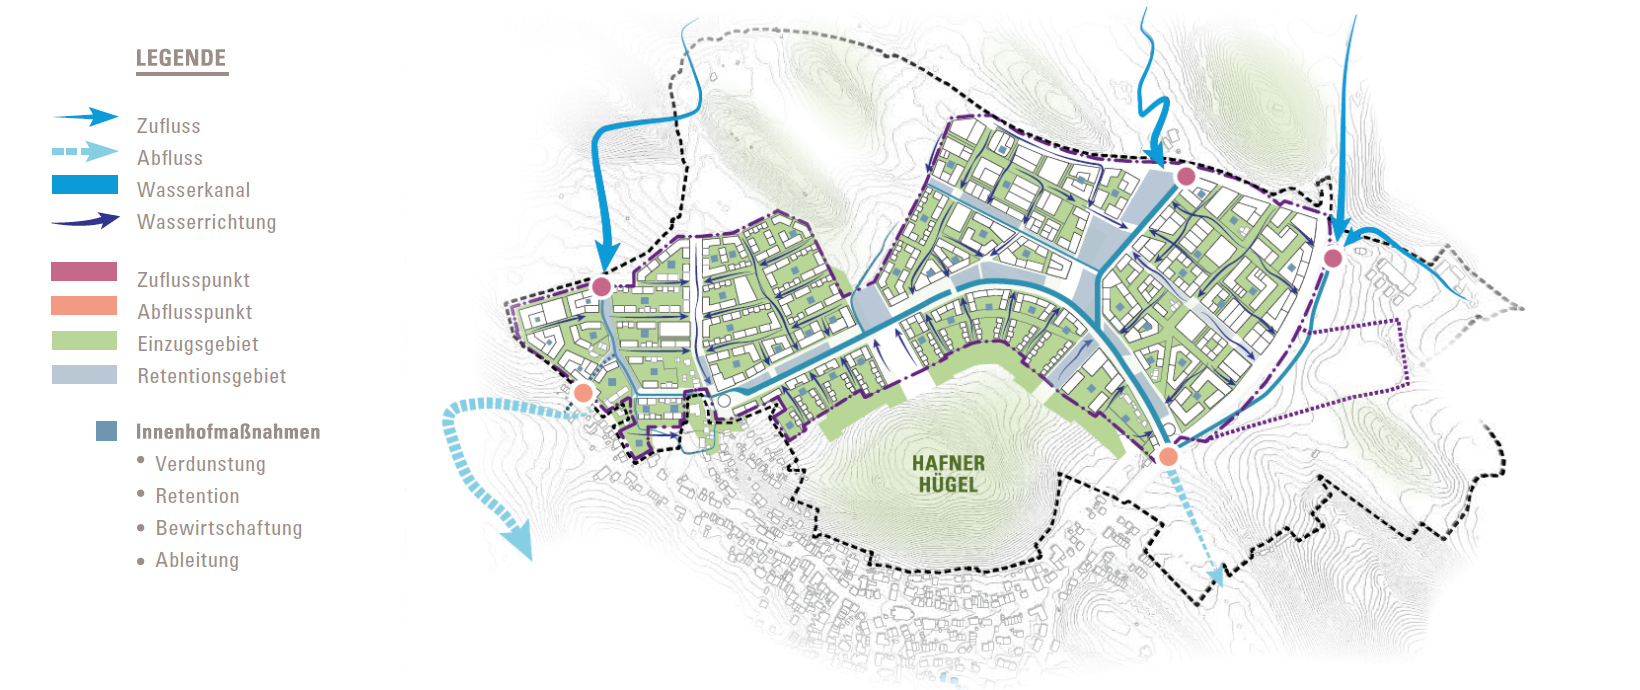 Grafik zum Entwässerungskonzept im neuen Stadtteil Hafner